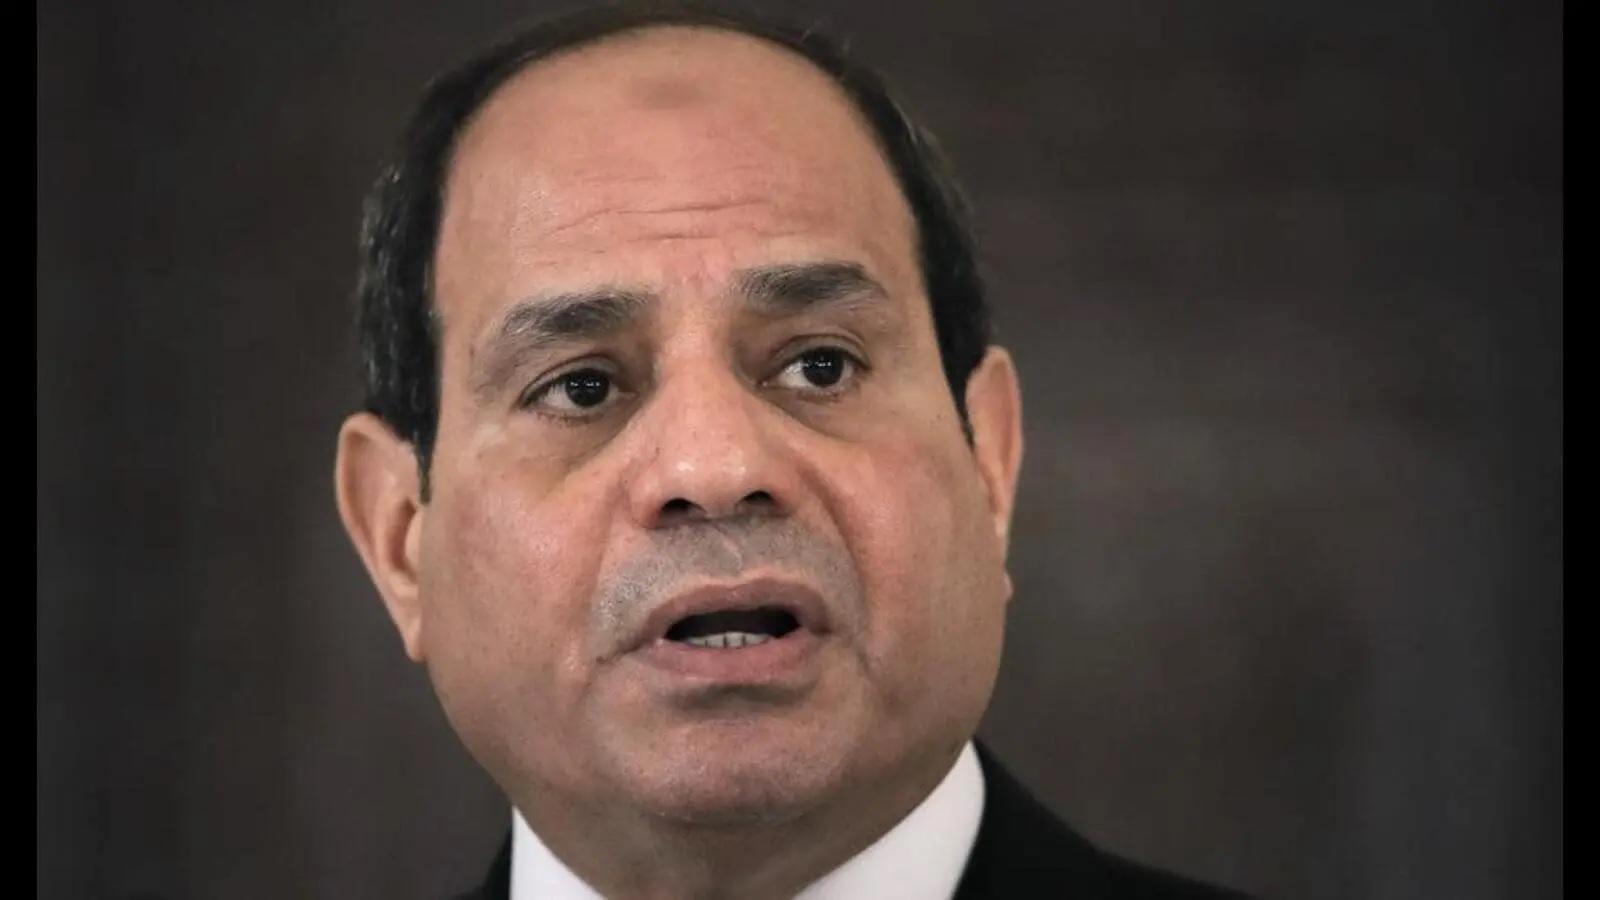 Egypt’s President